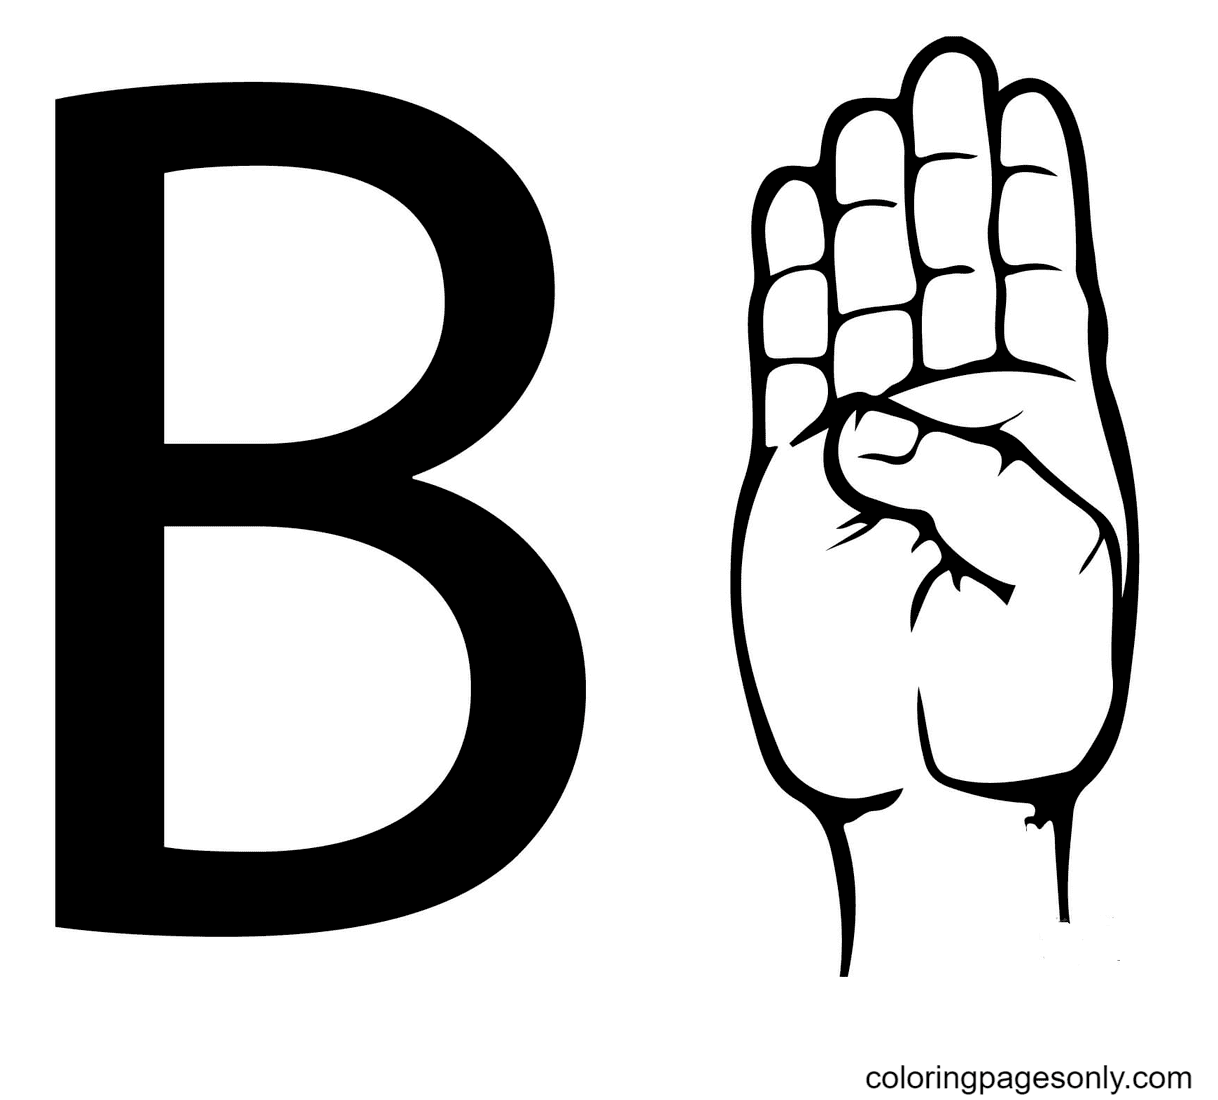 لغة الإشارة ASL حرف B من الحرف B